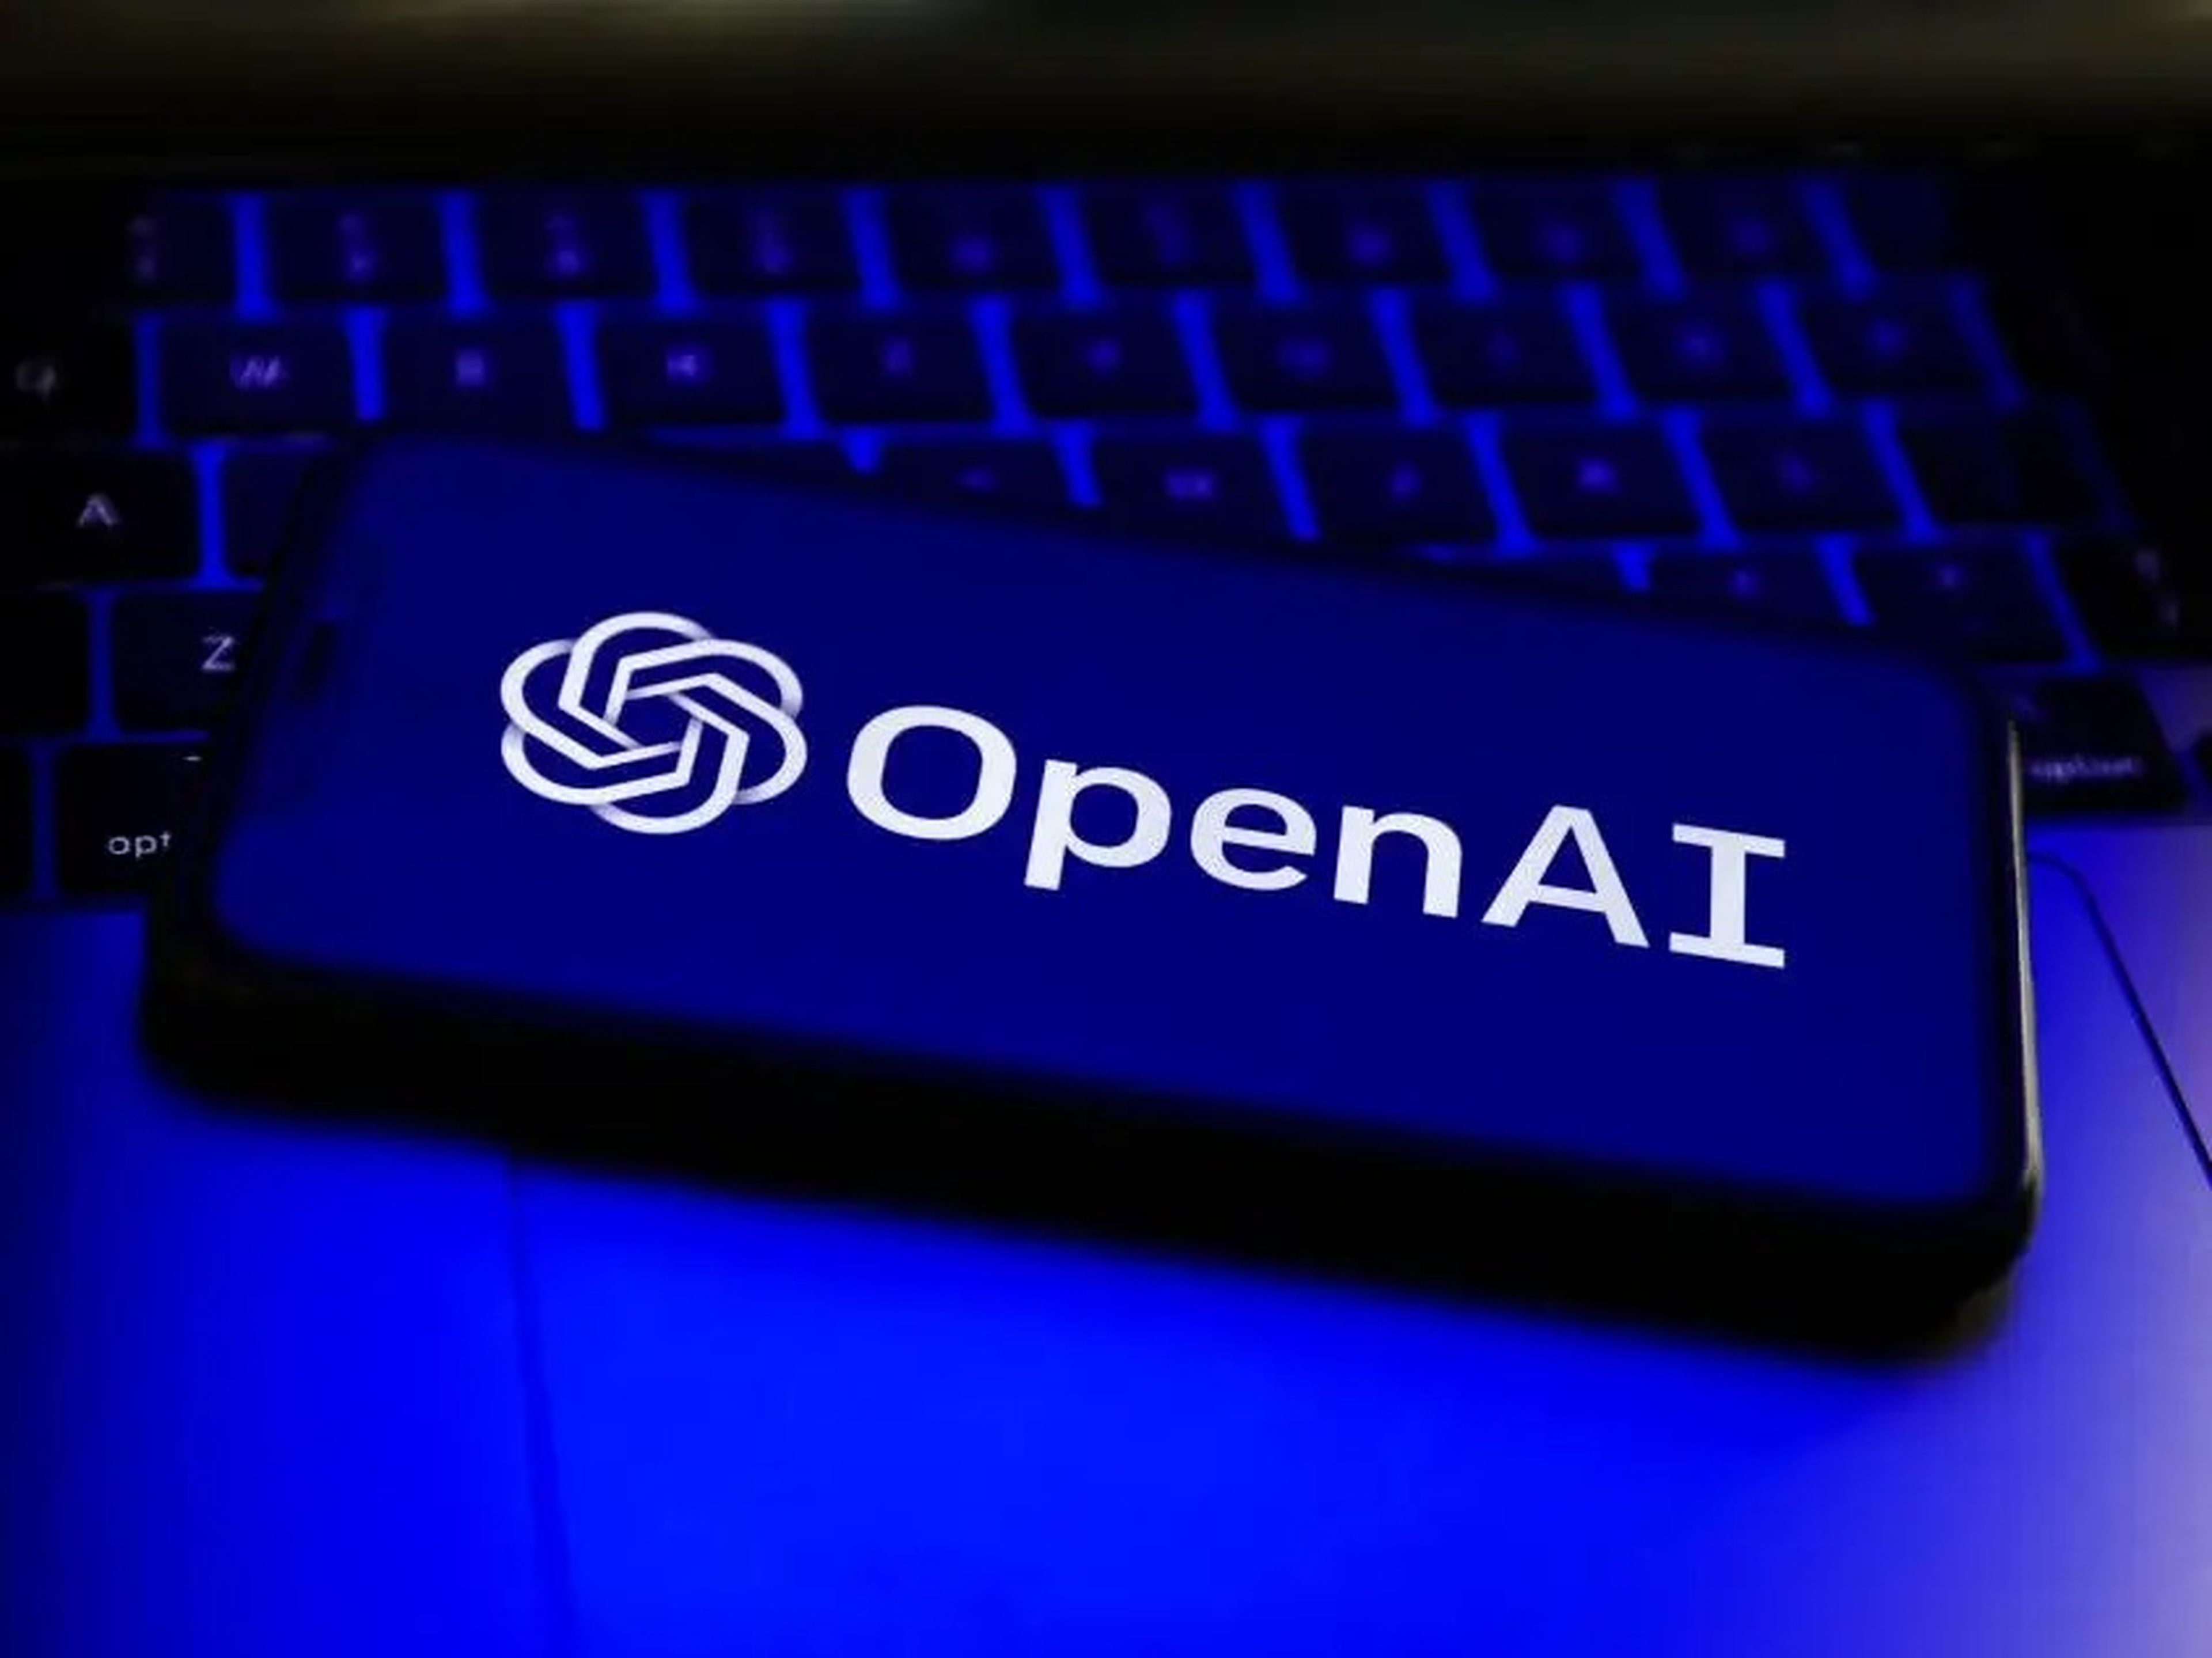 El logo de OpenAI en la pantalla de un teléfono móvil.